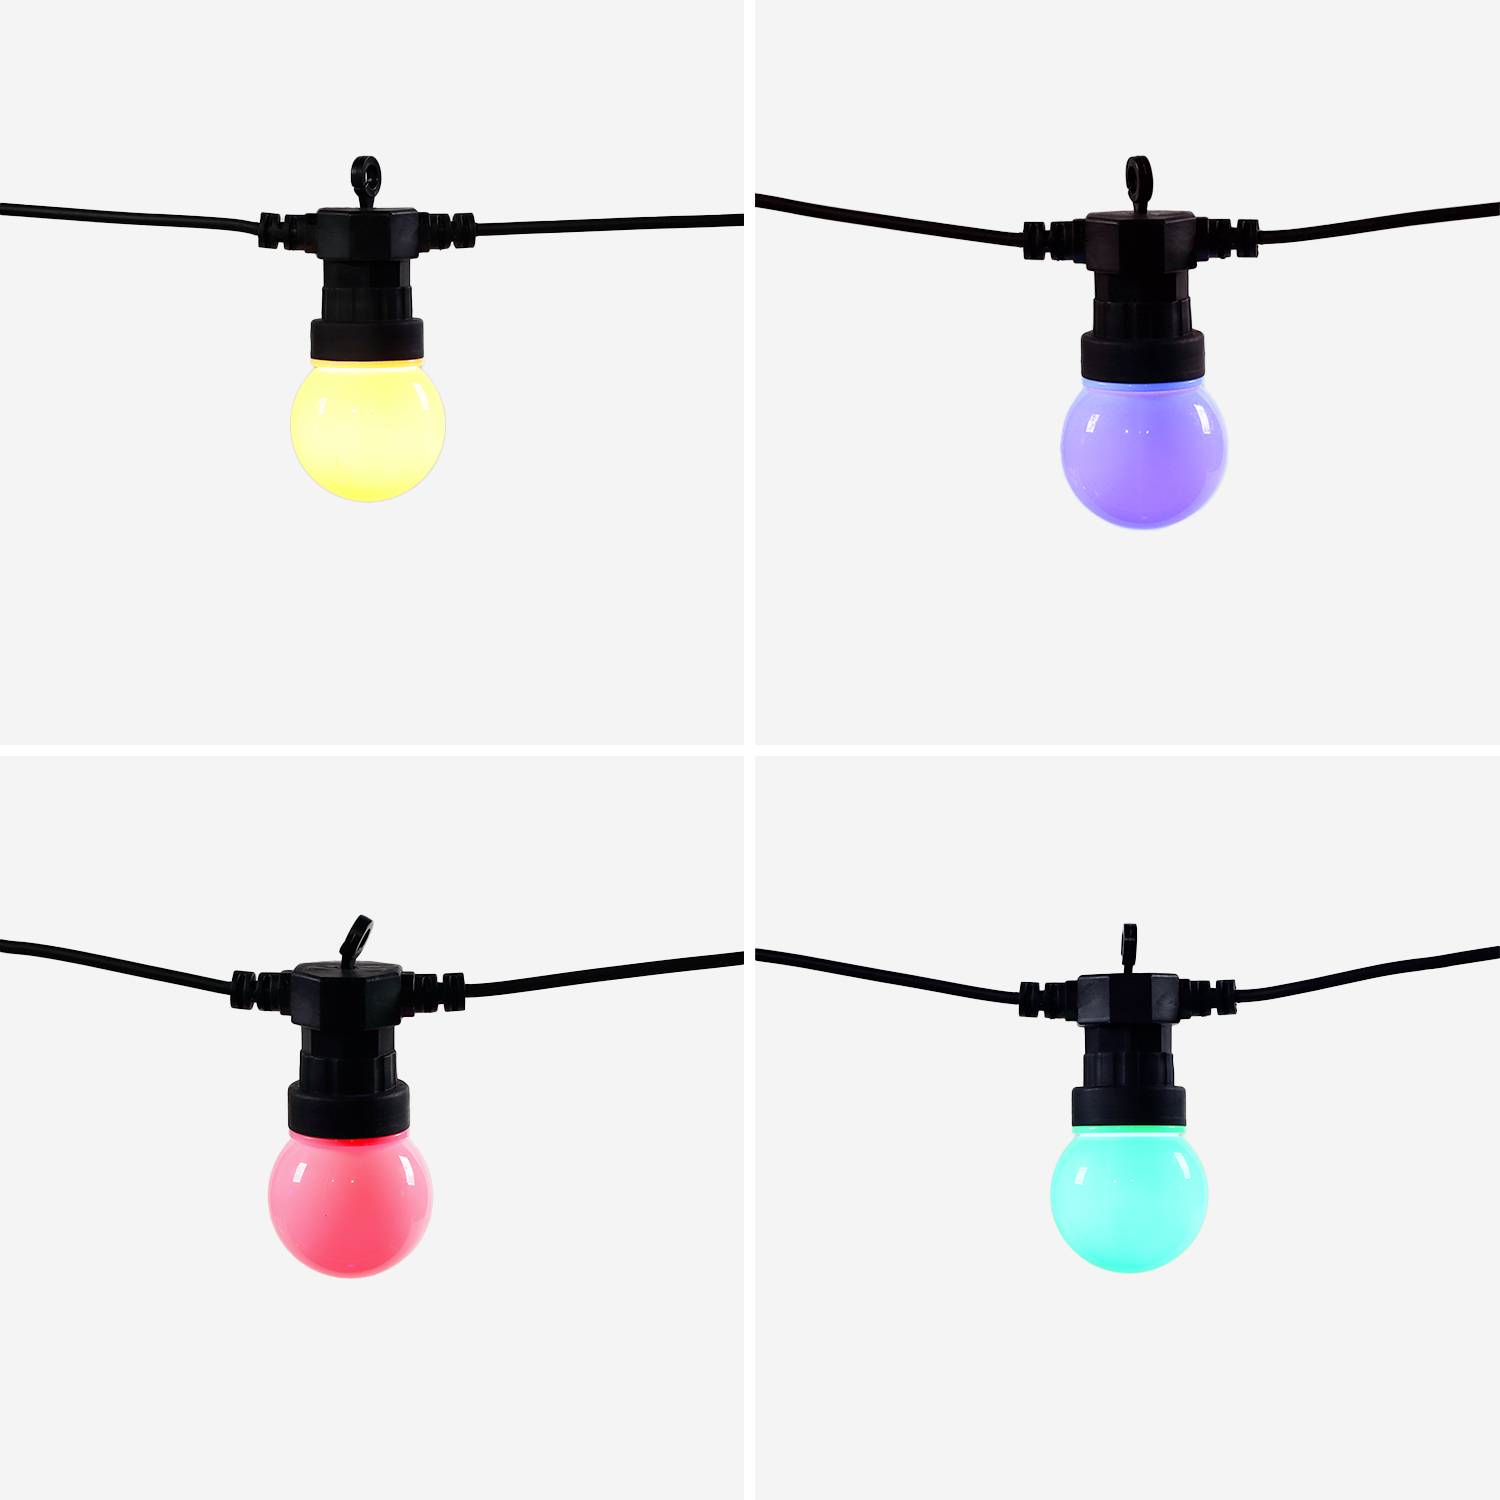 HERACLES - Ghirlanda da esterno con 10 lampadine, 50 LED multicolori, funzionamento a batterie (non incluse), funzione timer, 8 modalità, lunghezza 4,5 m Photo4